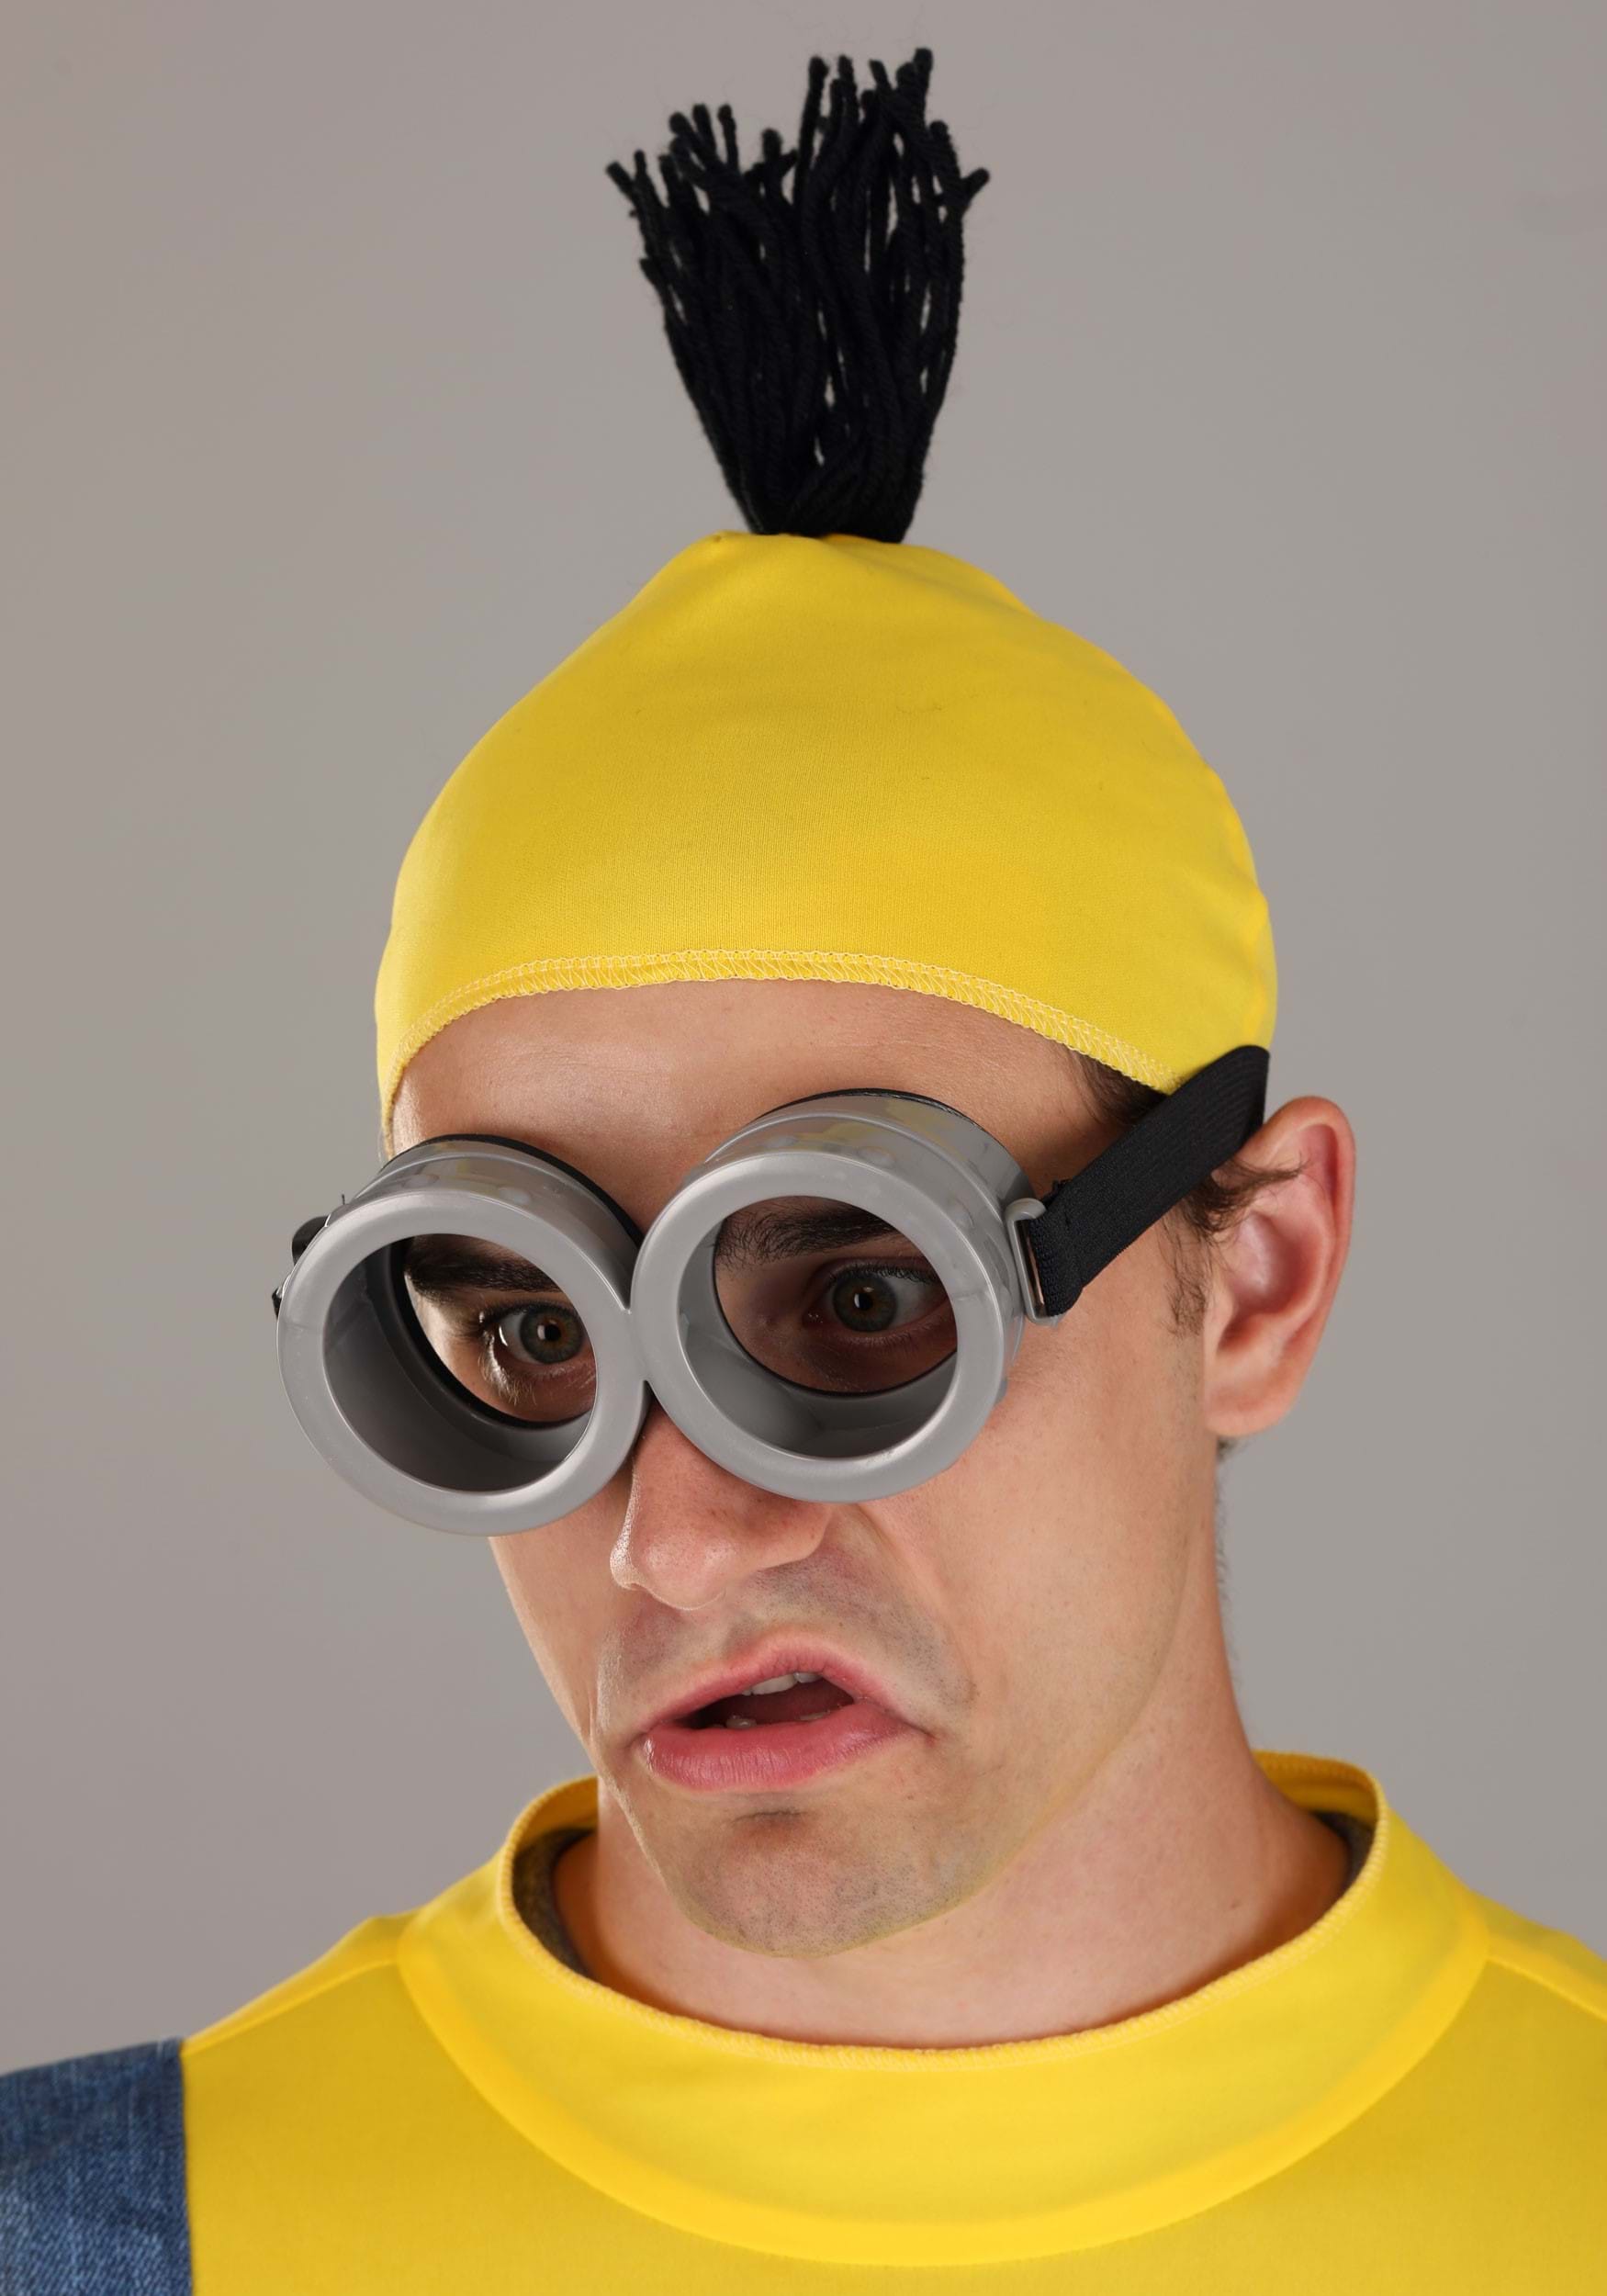 El disfraz de Minion incluye gafas de Minion, gorro amarillo y delantal azul